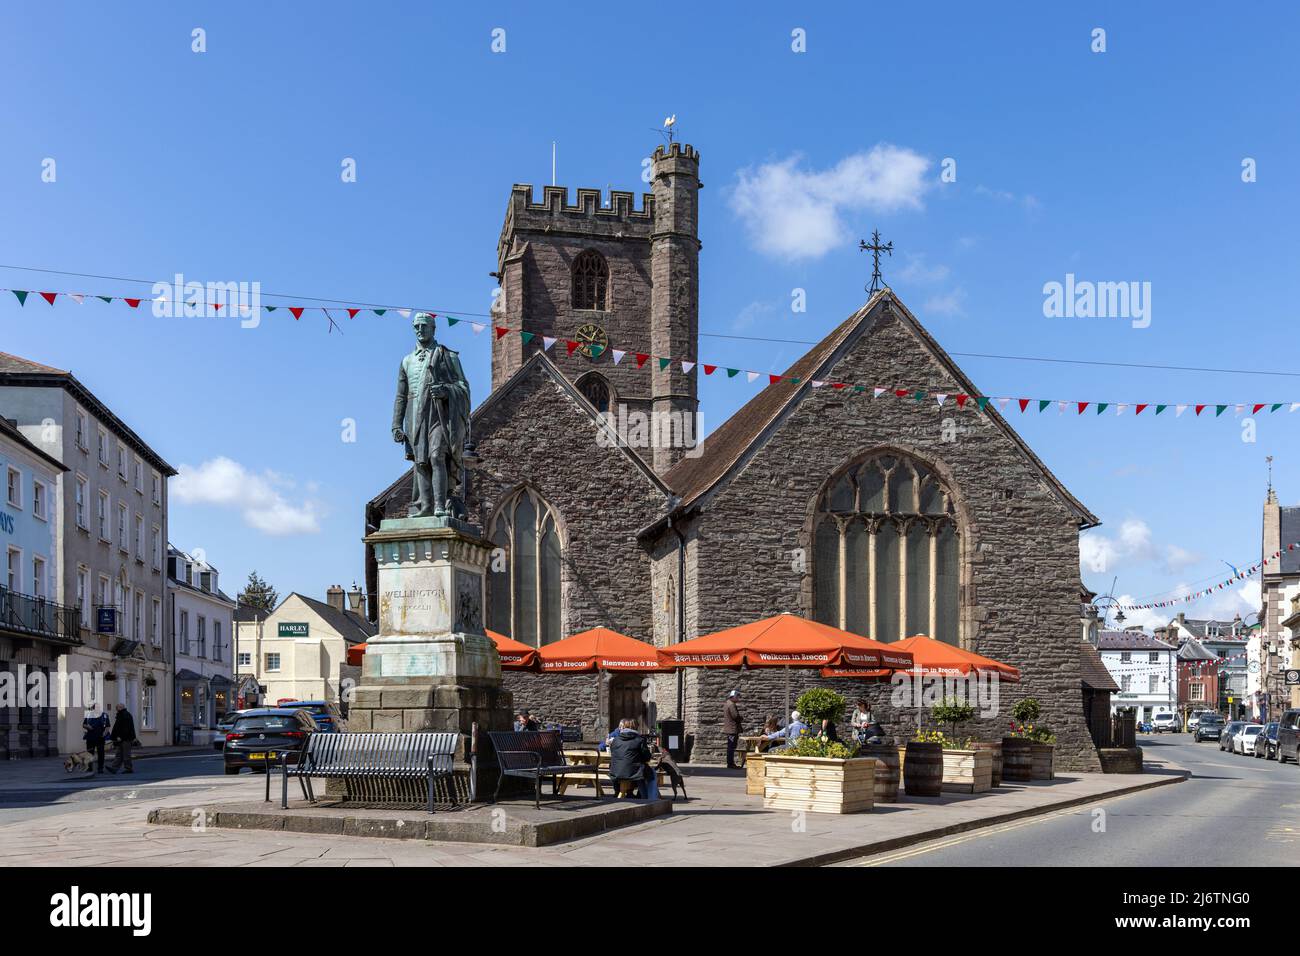 Statua del Duca di Wellington e la chiesa parrocchiale di St. Marys nel centro della città di Brecon, Powys, Galles del Sud, Regno Unito Foto Stock